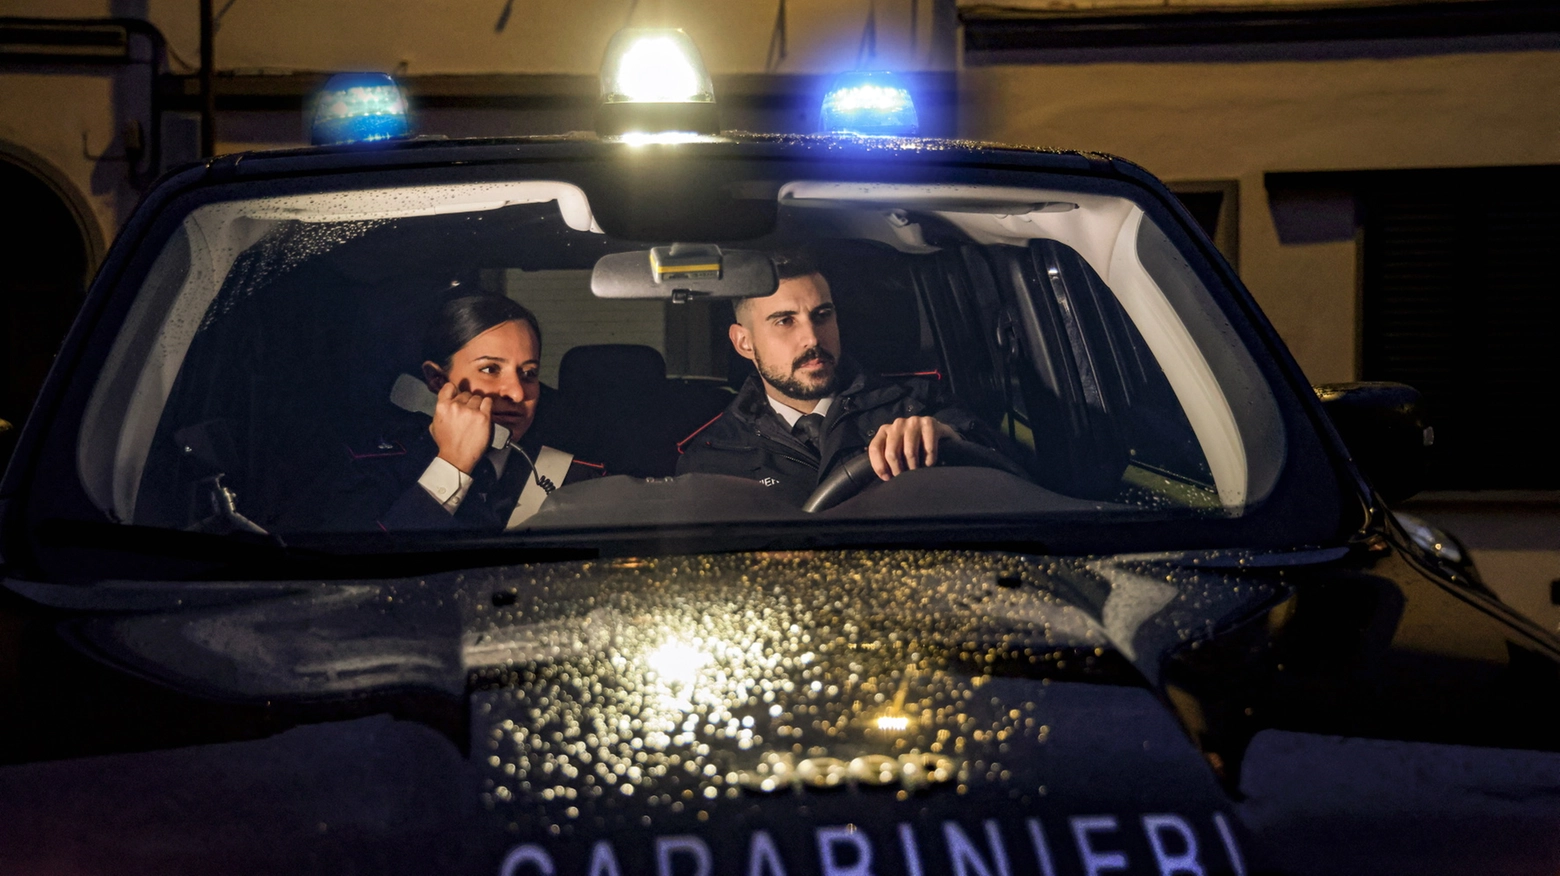 La rapina è avvenuta a Sergnano lo scorso novembre L’autore ha 34 anni ed è stato identificato e rintracciato a Camisano dai carabinieri